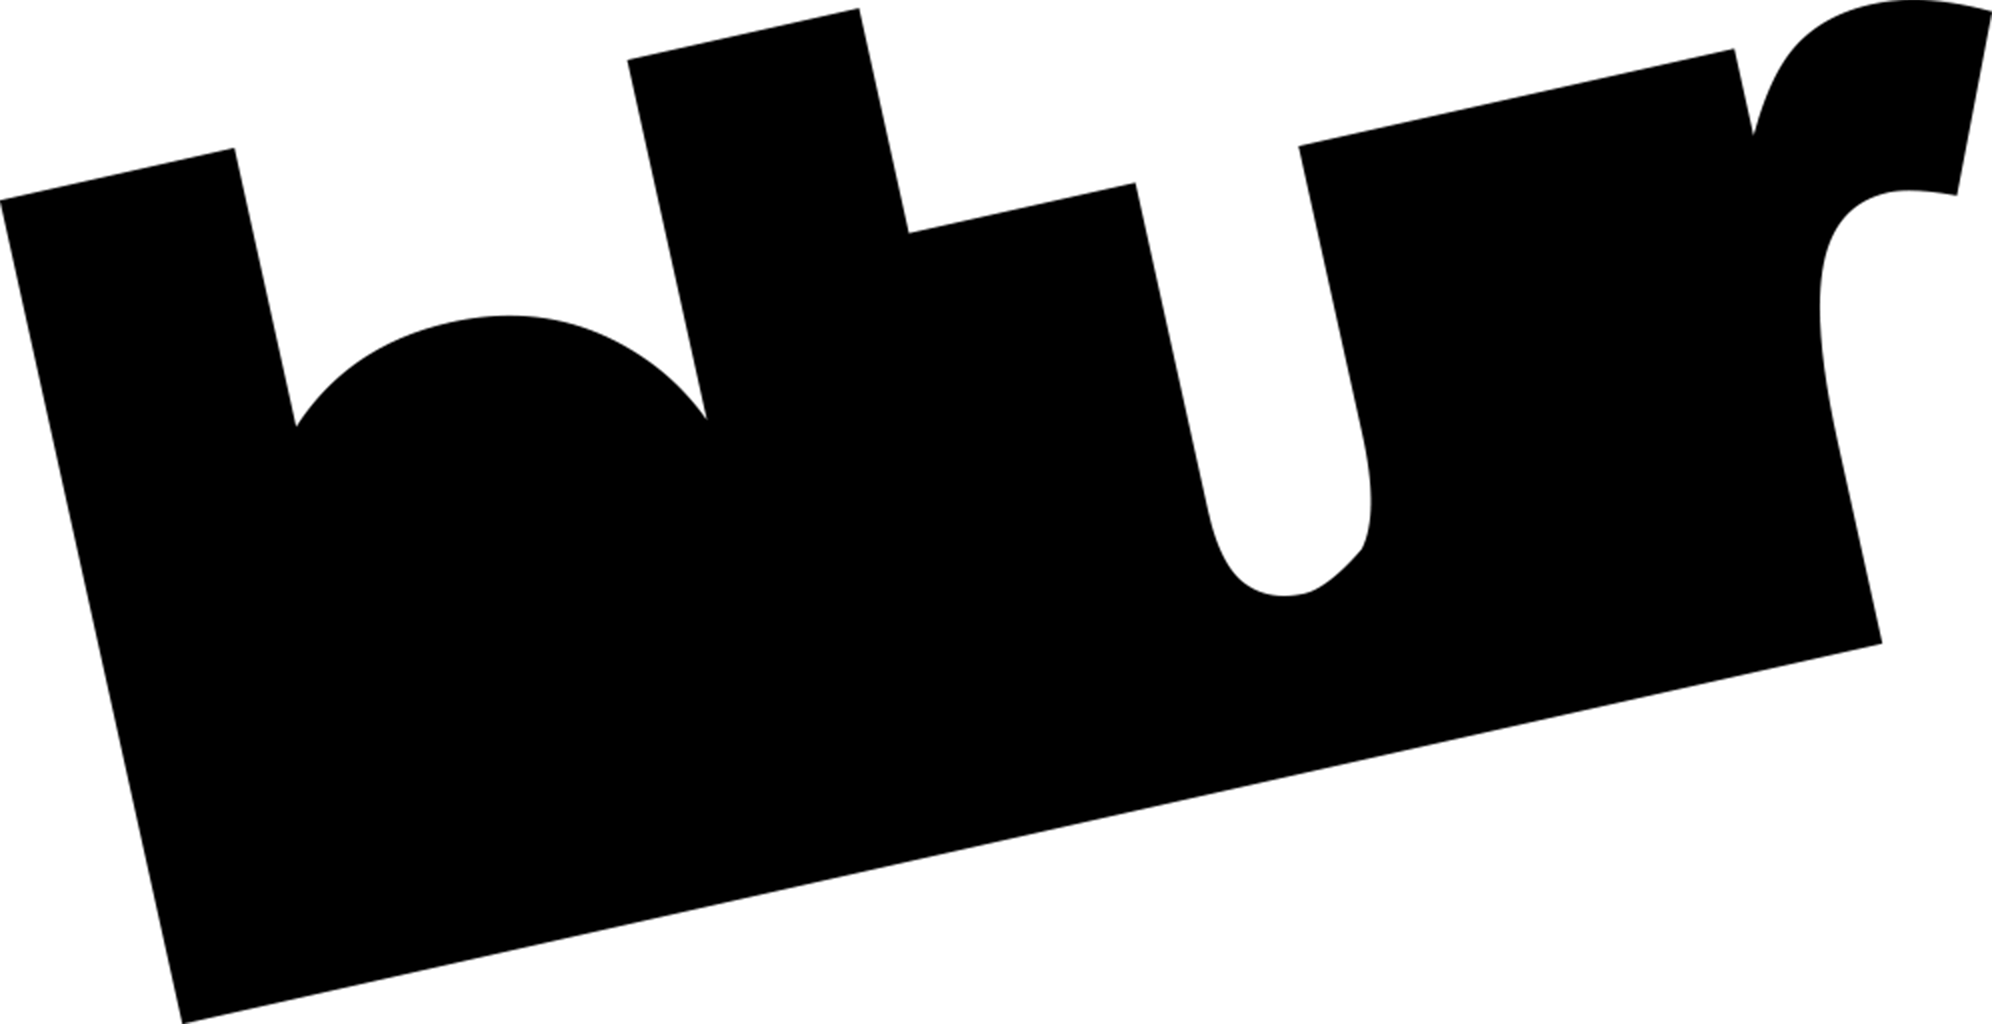  Top Technology PR Firm Logo: Blur Group